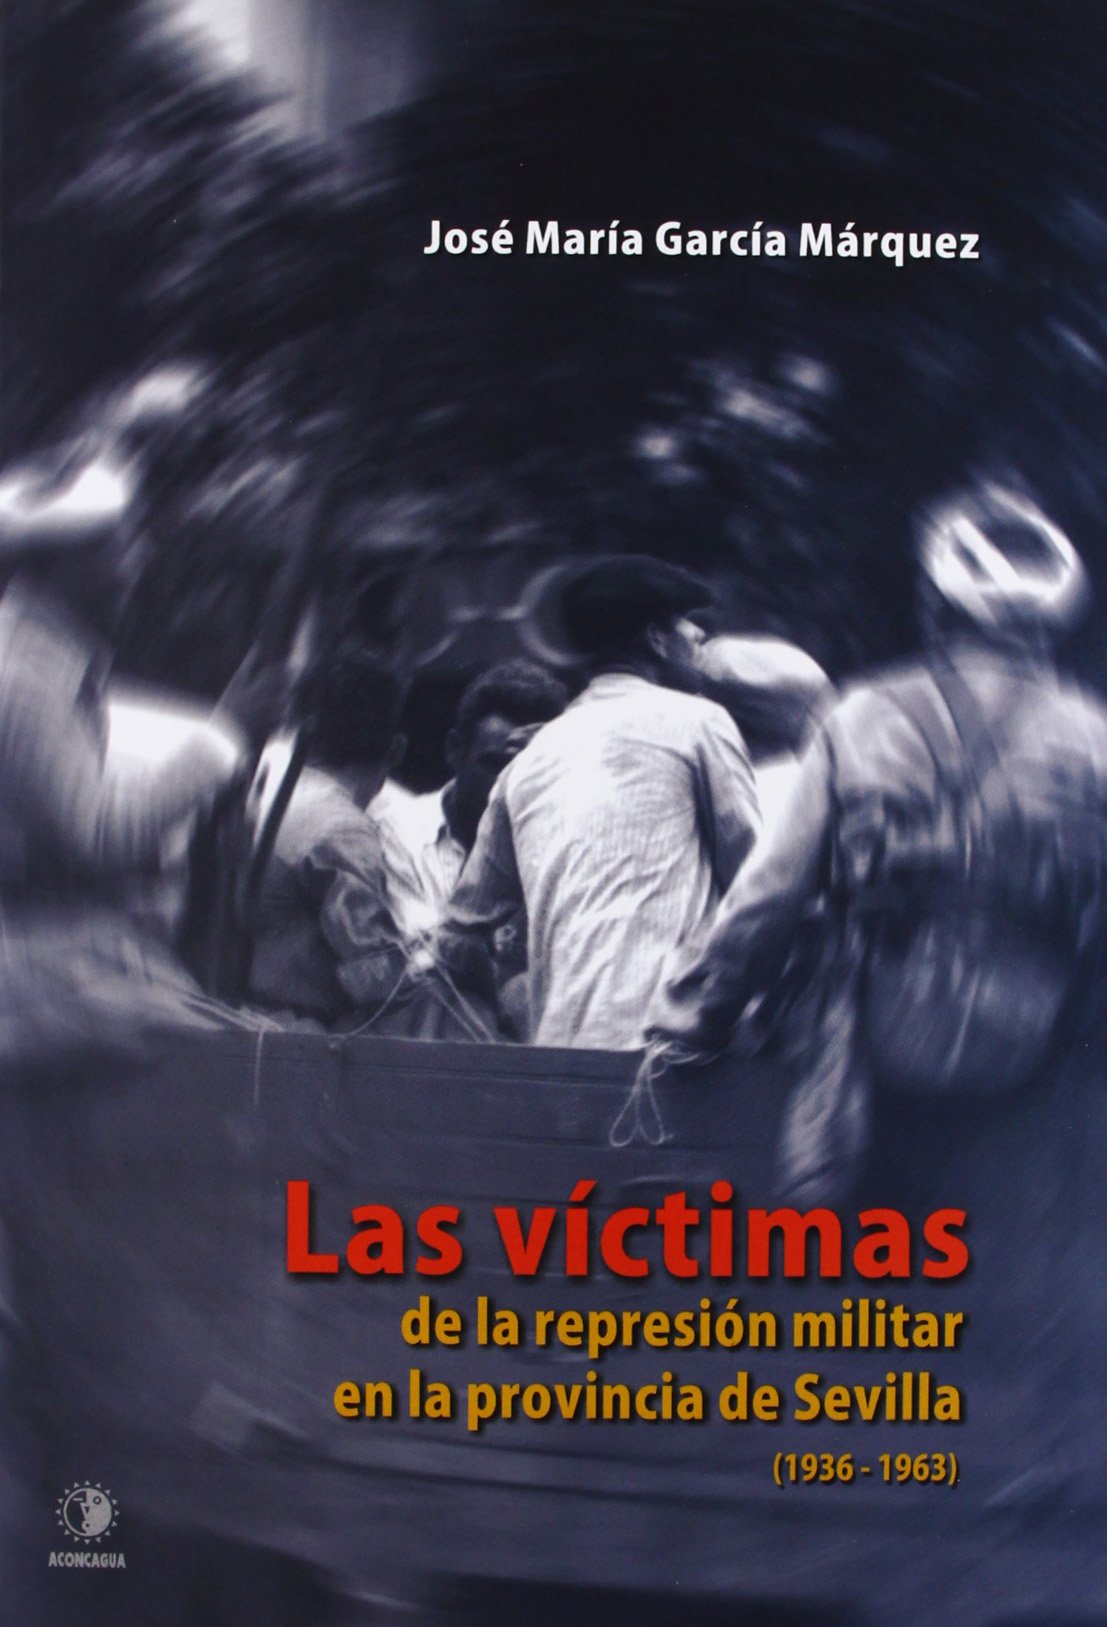 Las víctimas de la represión militar en la provincia de Sevilla, 1936-1963